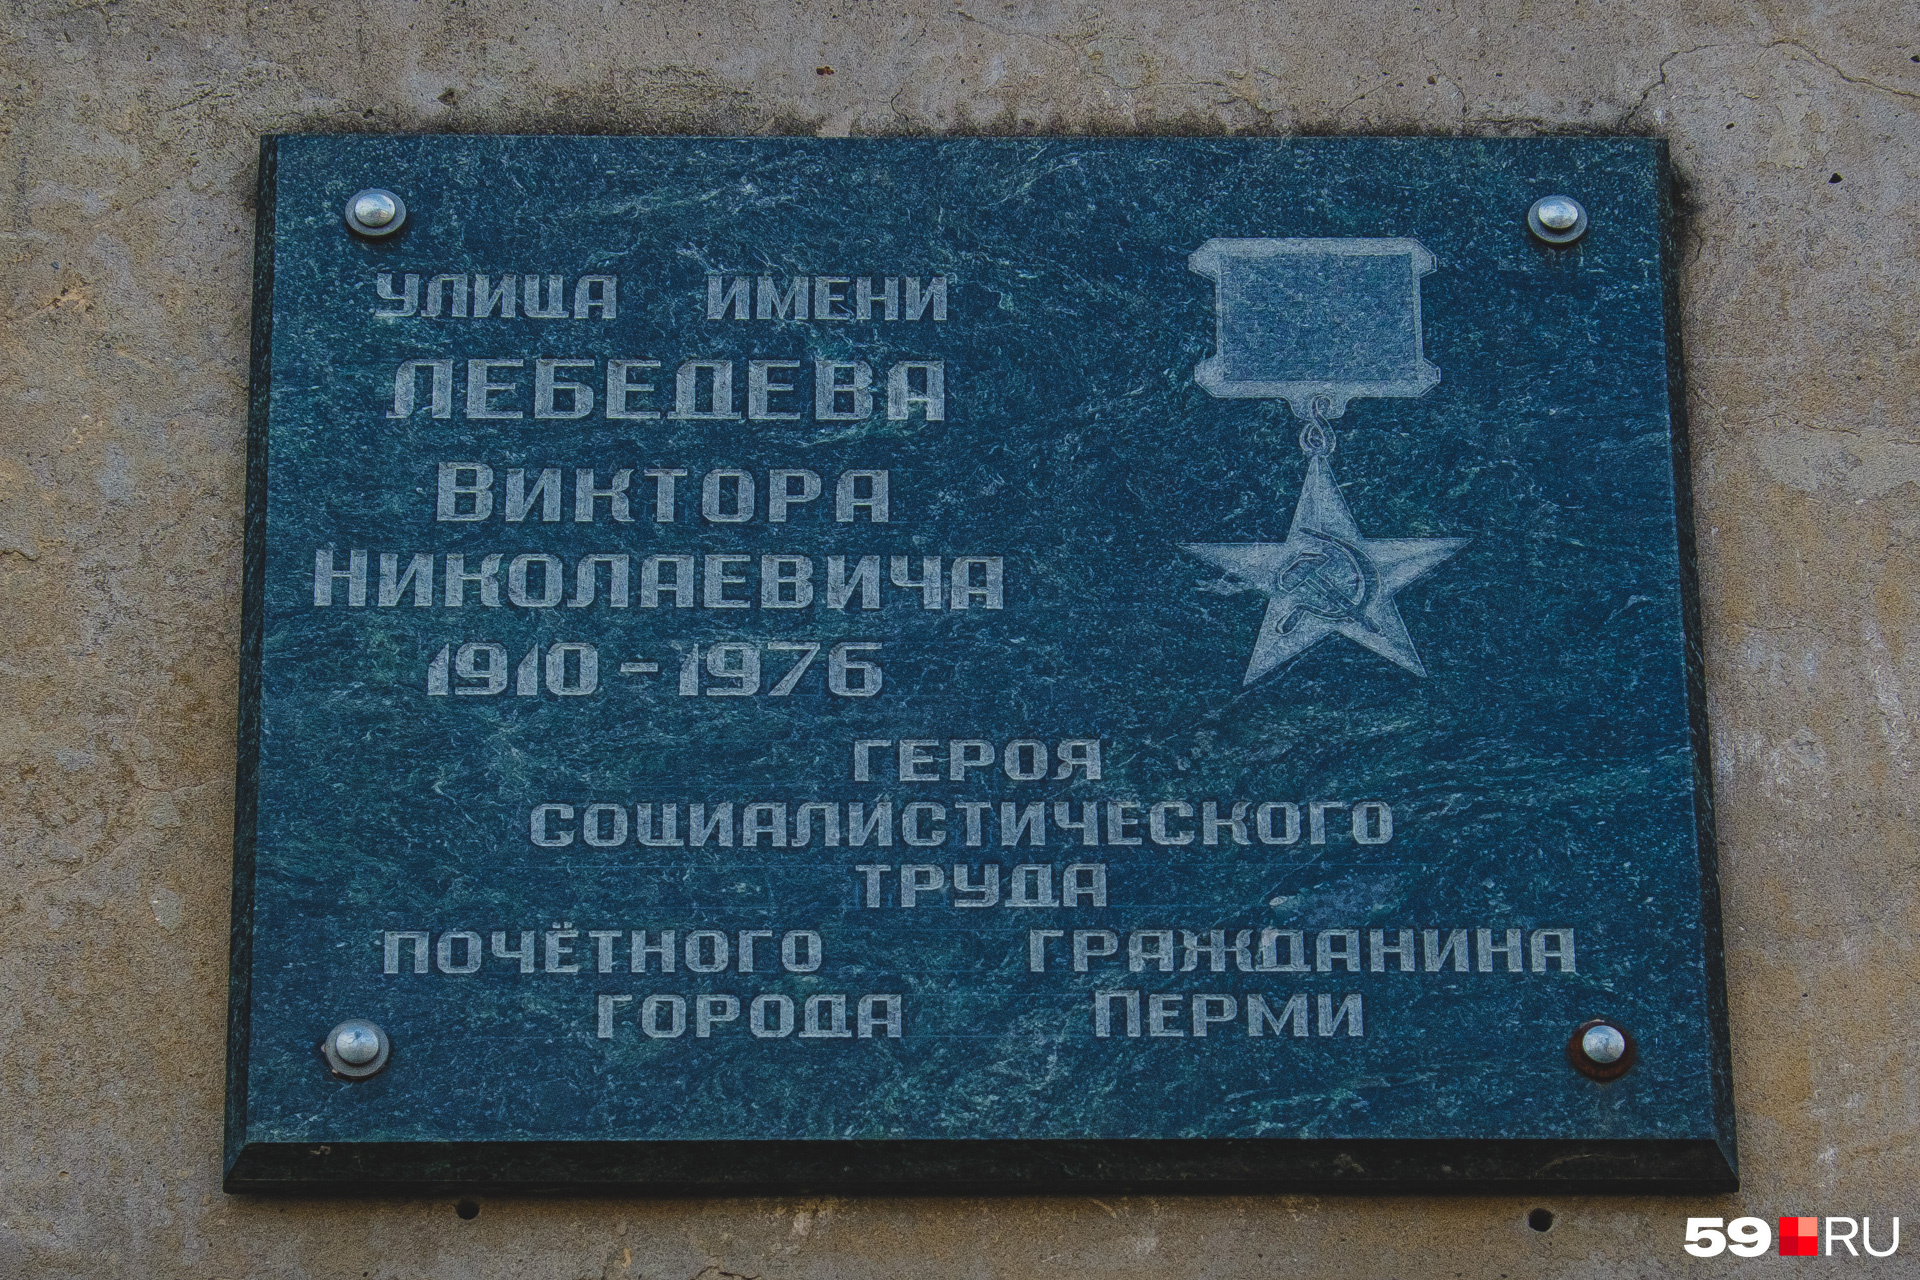 Улица названа именем Виктора Лебедева, руководившего Мотовилихинским заводом в его «золотую» эпоху